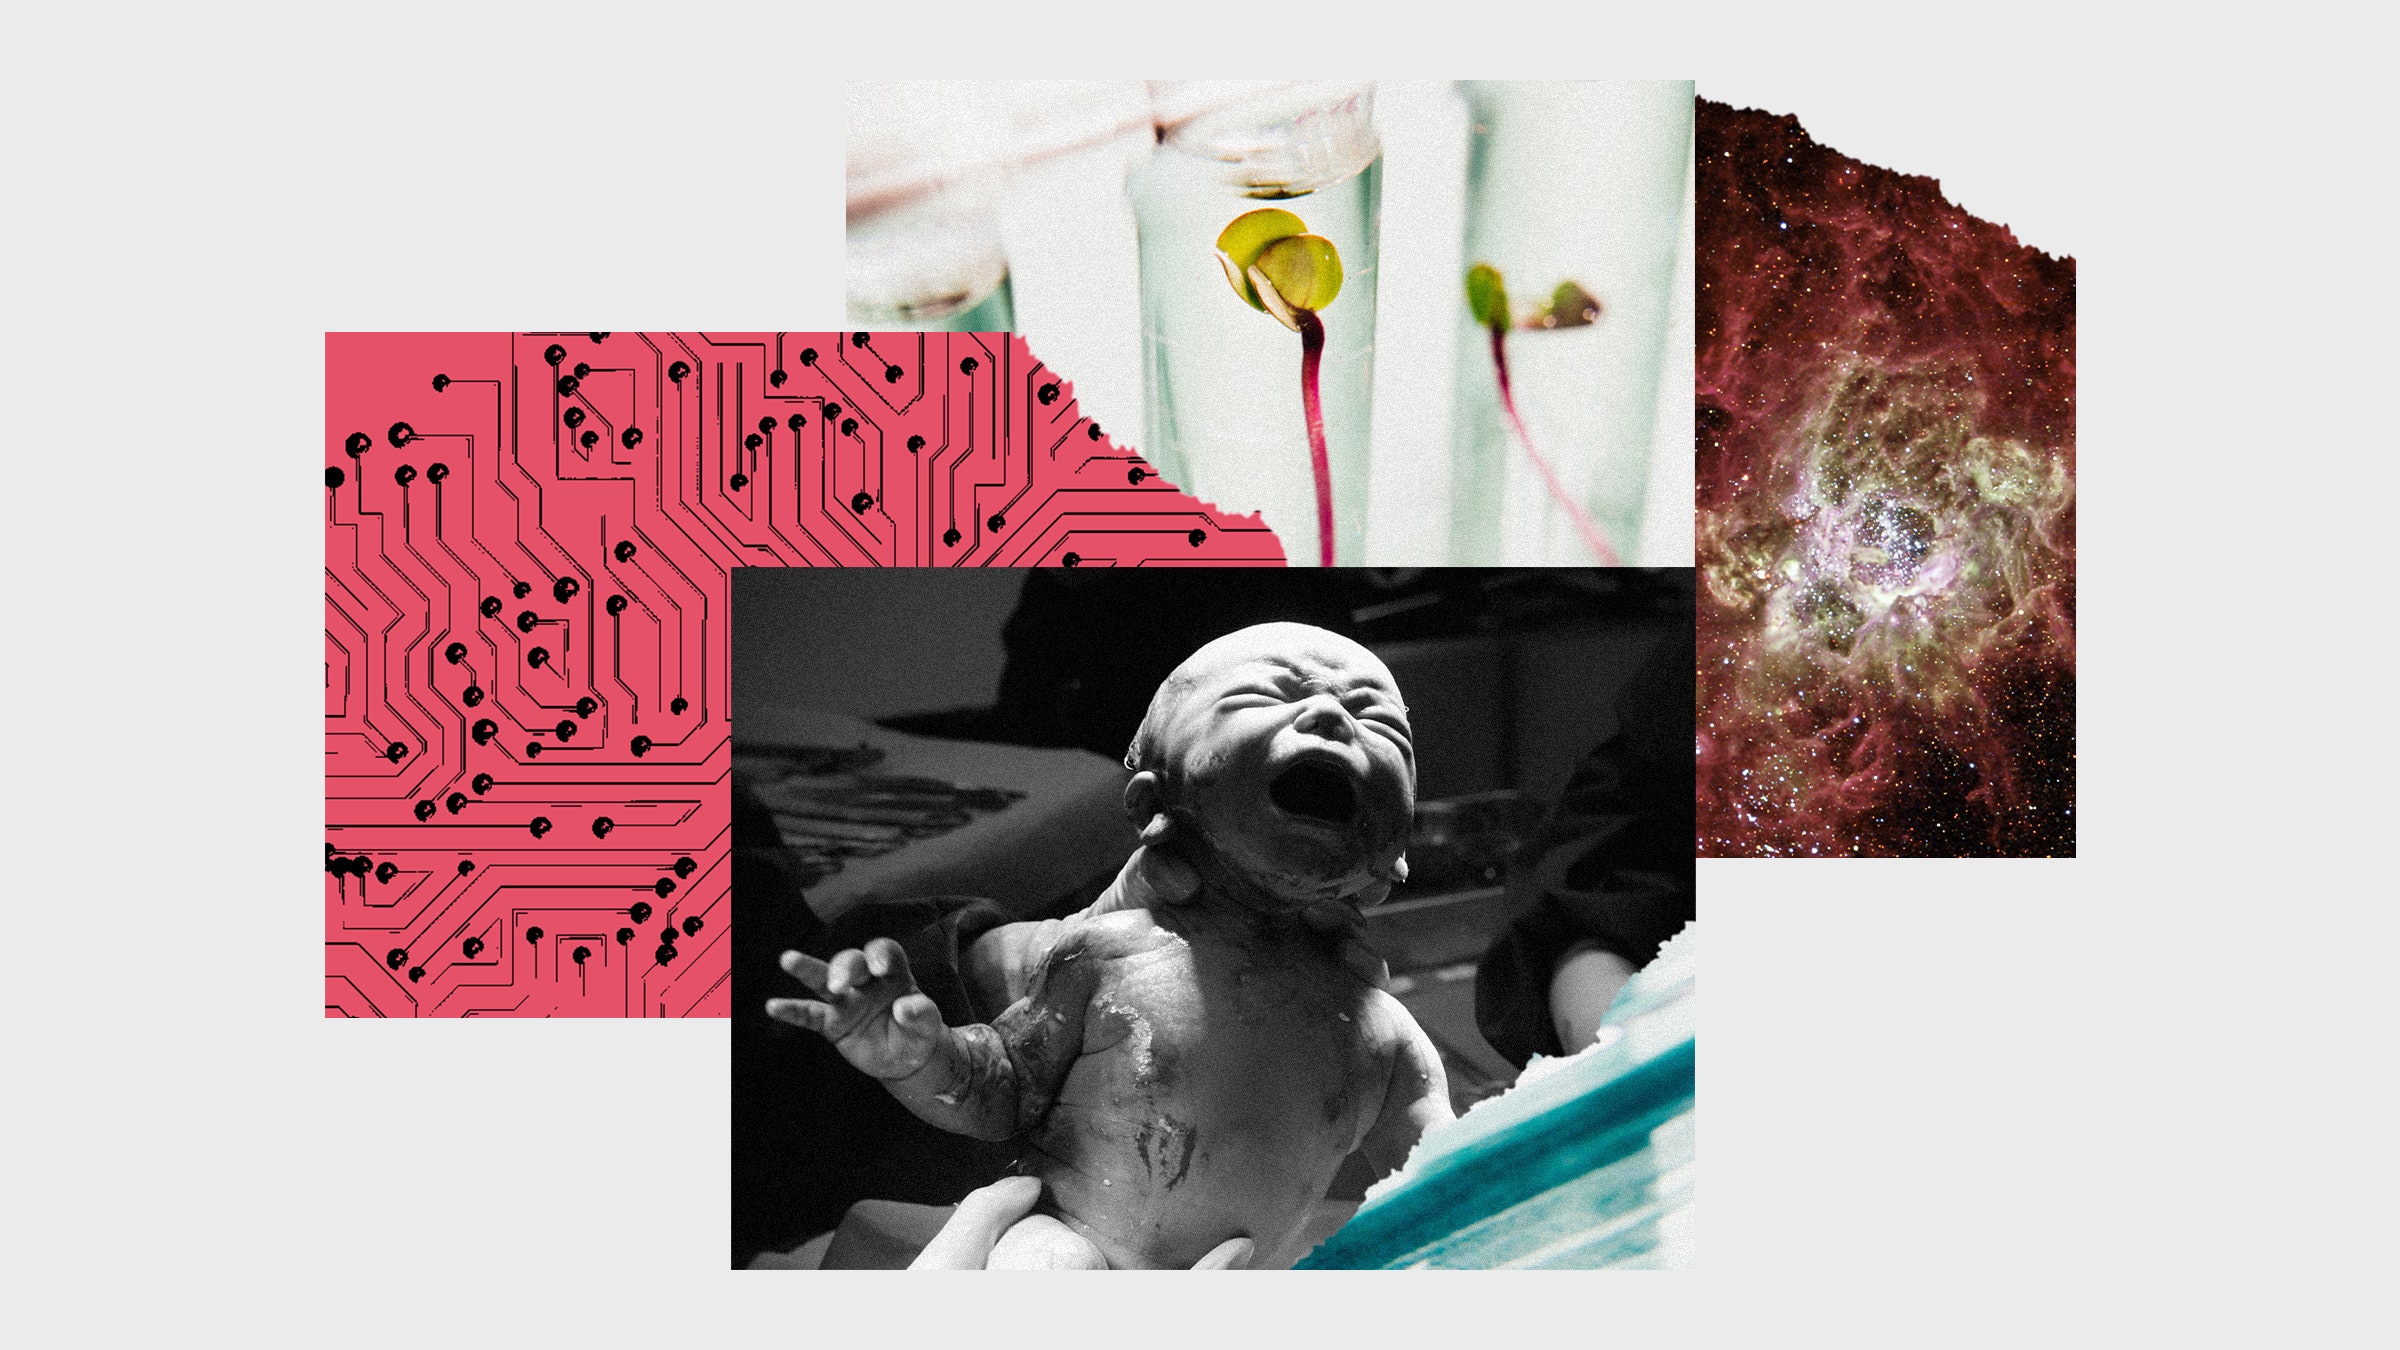 Colagem de fotos com a imagem de um recé m-nascido, plantas em um tubo de ensaio, galáxias e microchip